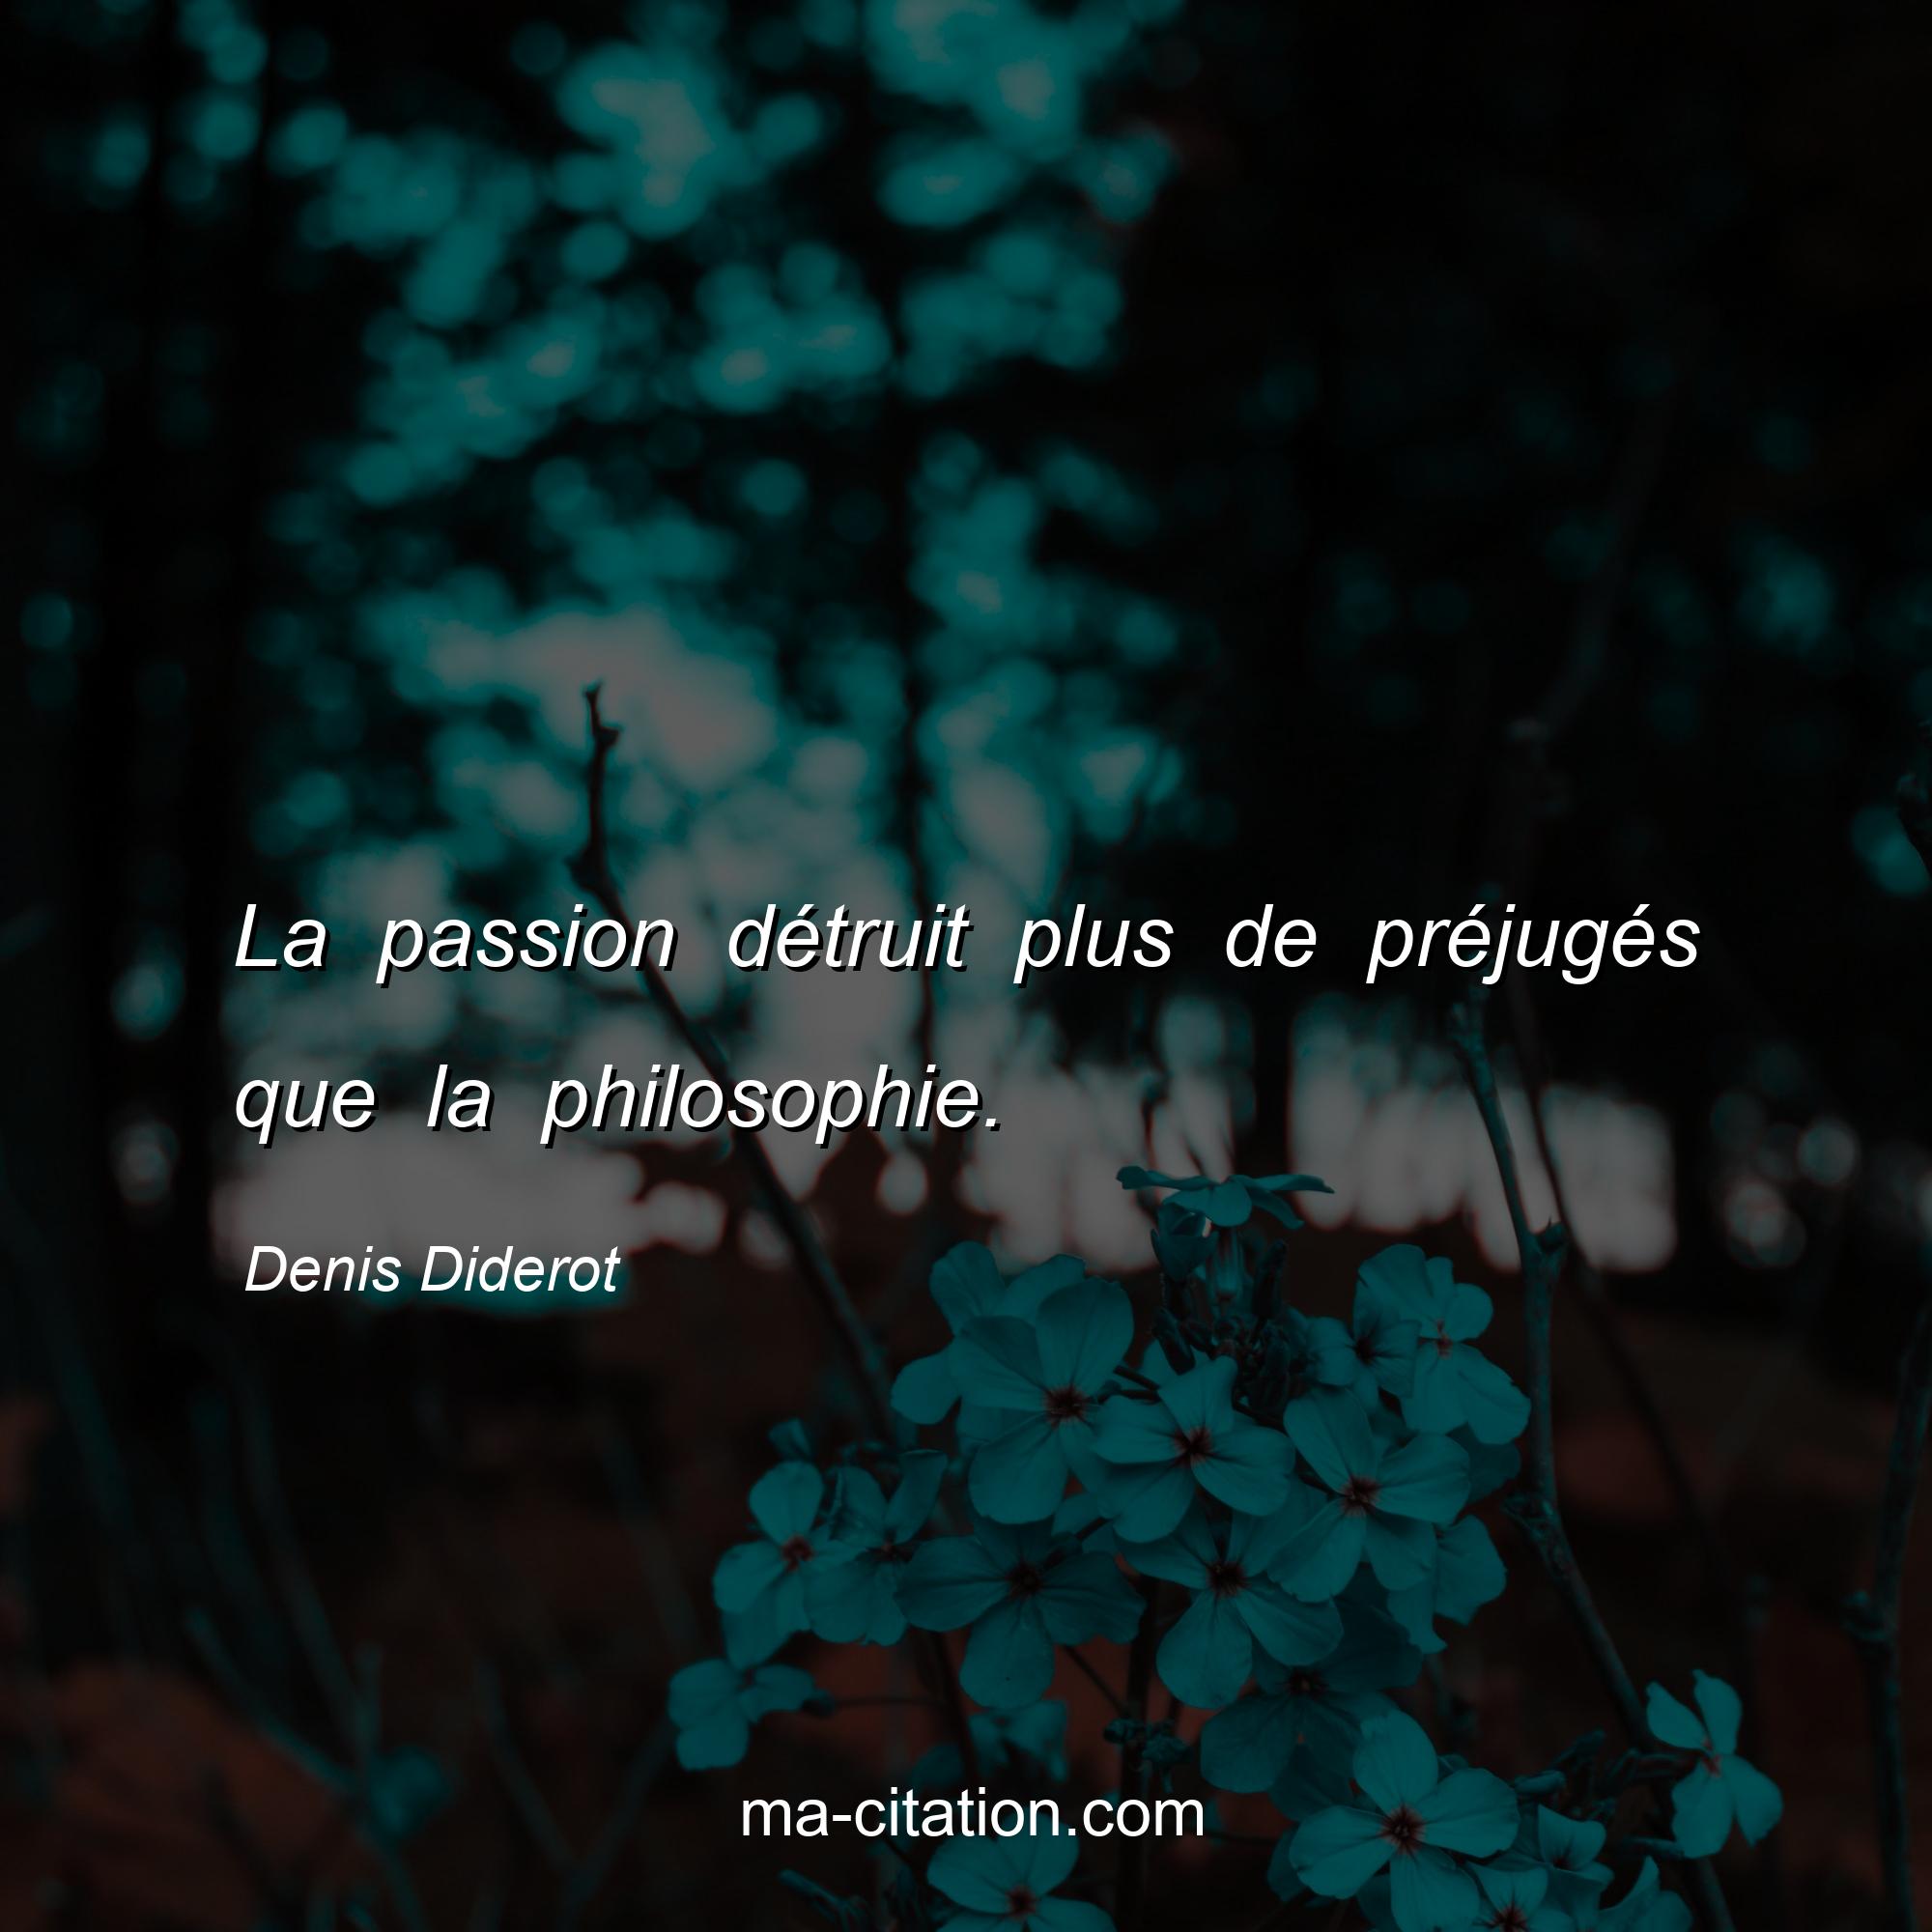 Denis Diderot : La passion détruit plus de préjugés que la philosophie.